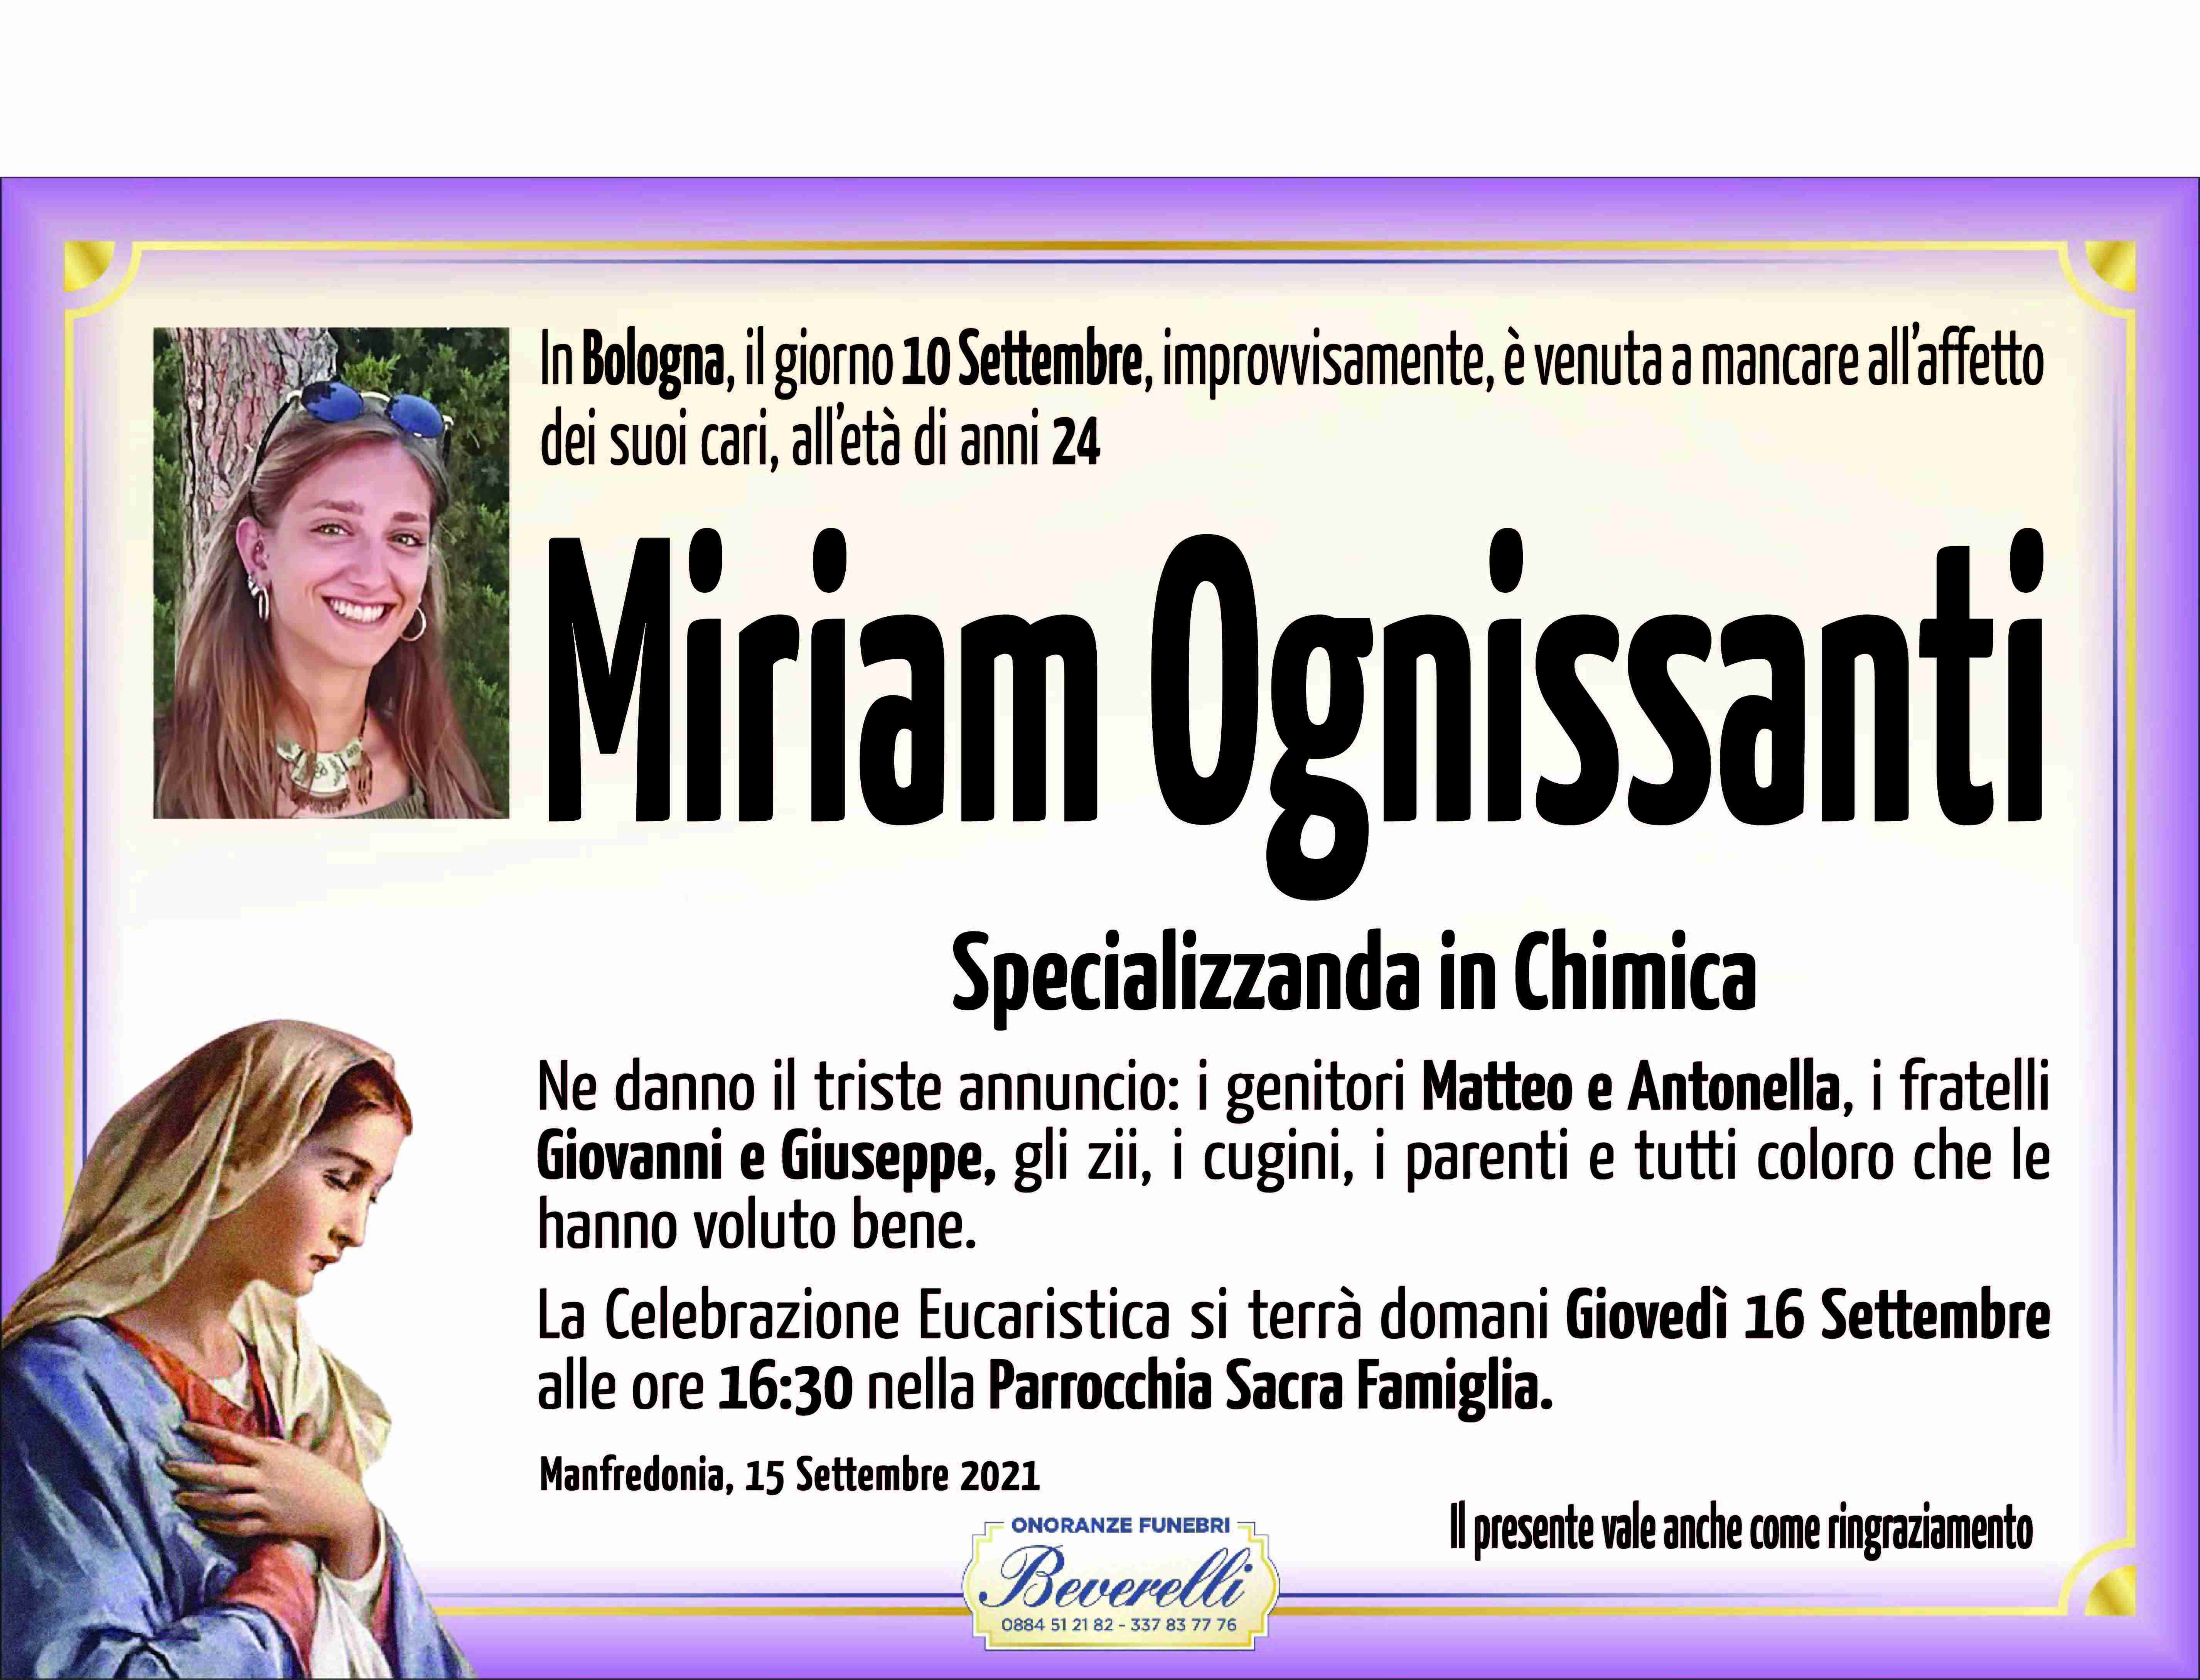 Miriam Ognissanti